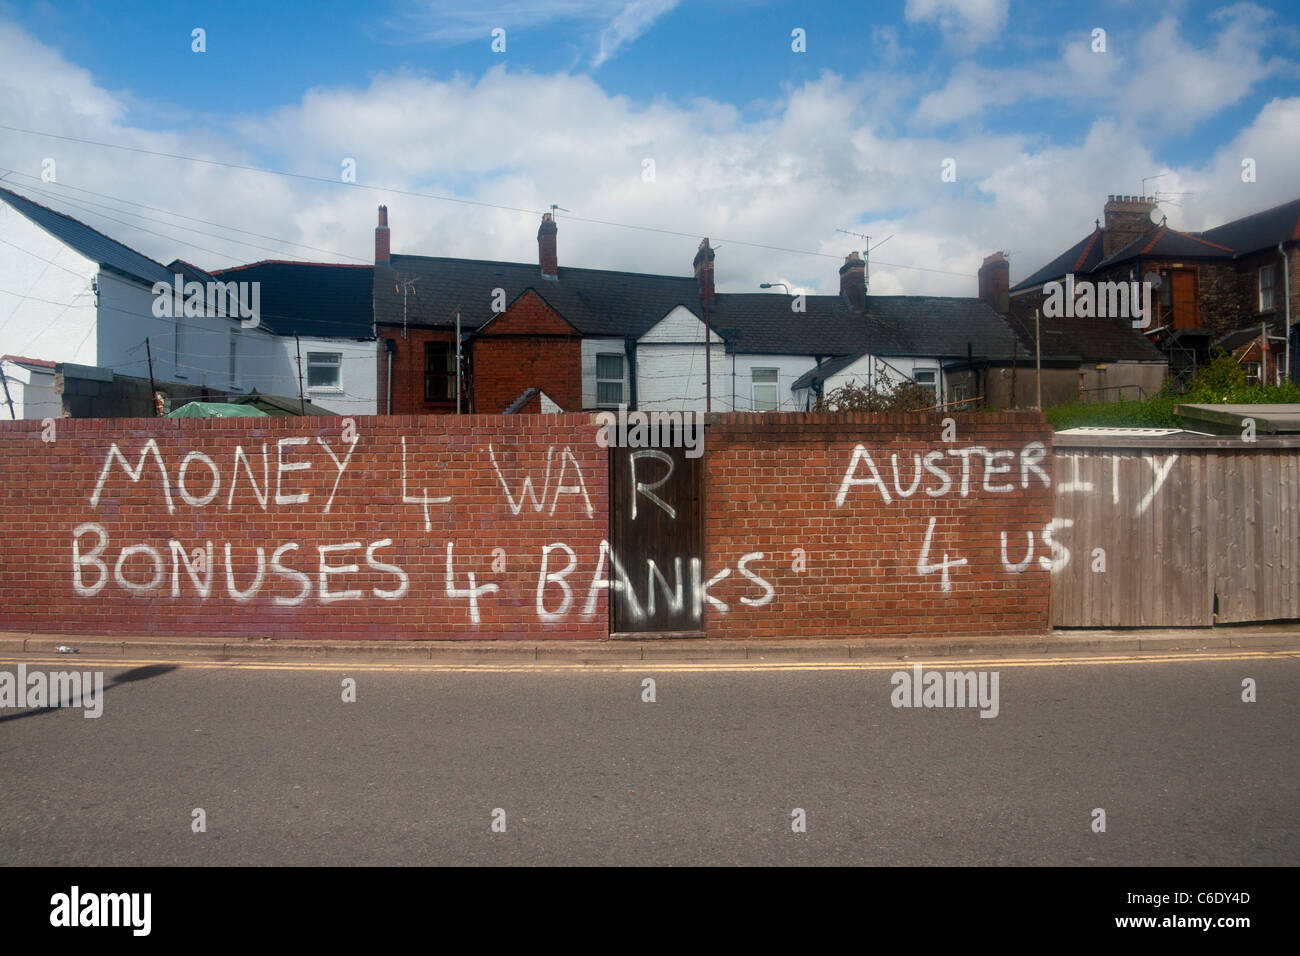 Graffiti políticos condenando la política económica Dinero 4 bonificaciones de guerra 4 bancos austeridad 4 Us pintura blanca sobre la pared de ladrillo rojo Foto de stock